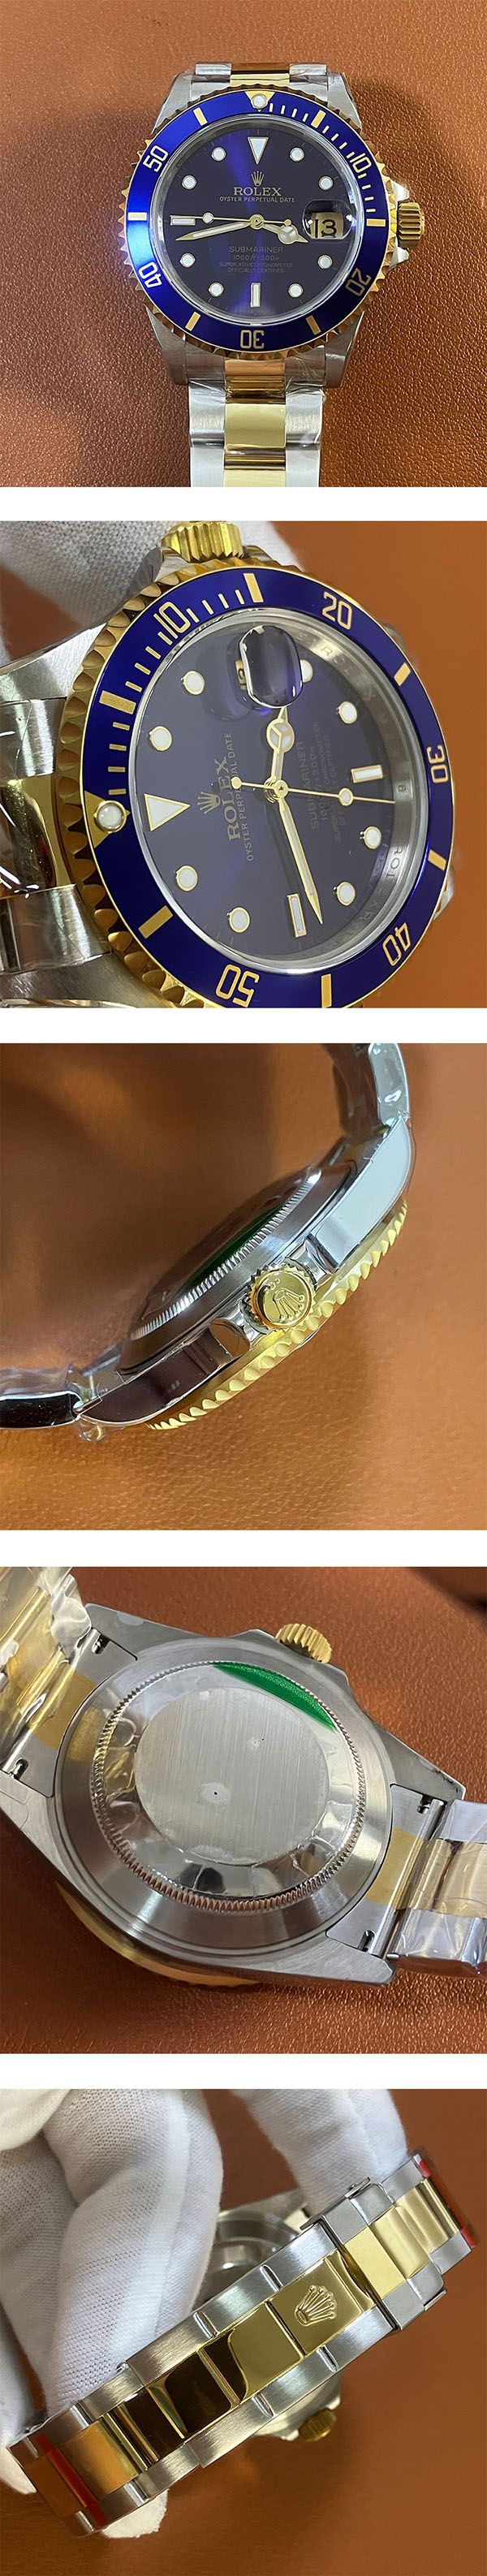 新着商品【ブルー】【40mm】ROLEX サブマリーナー 16613  フォーマル腕時計